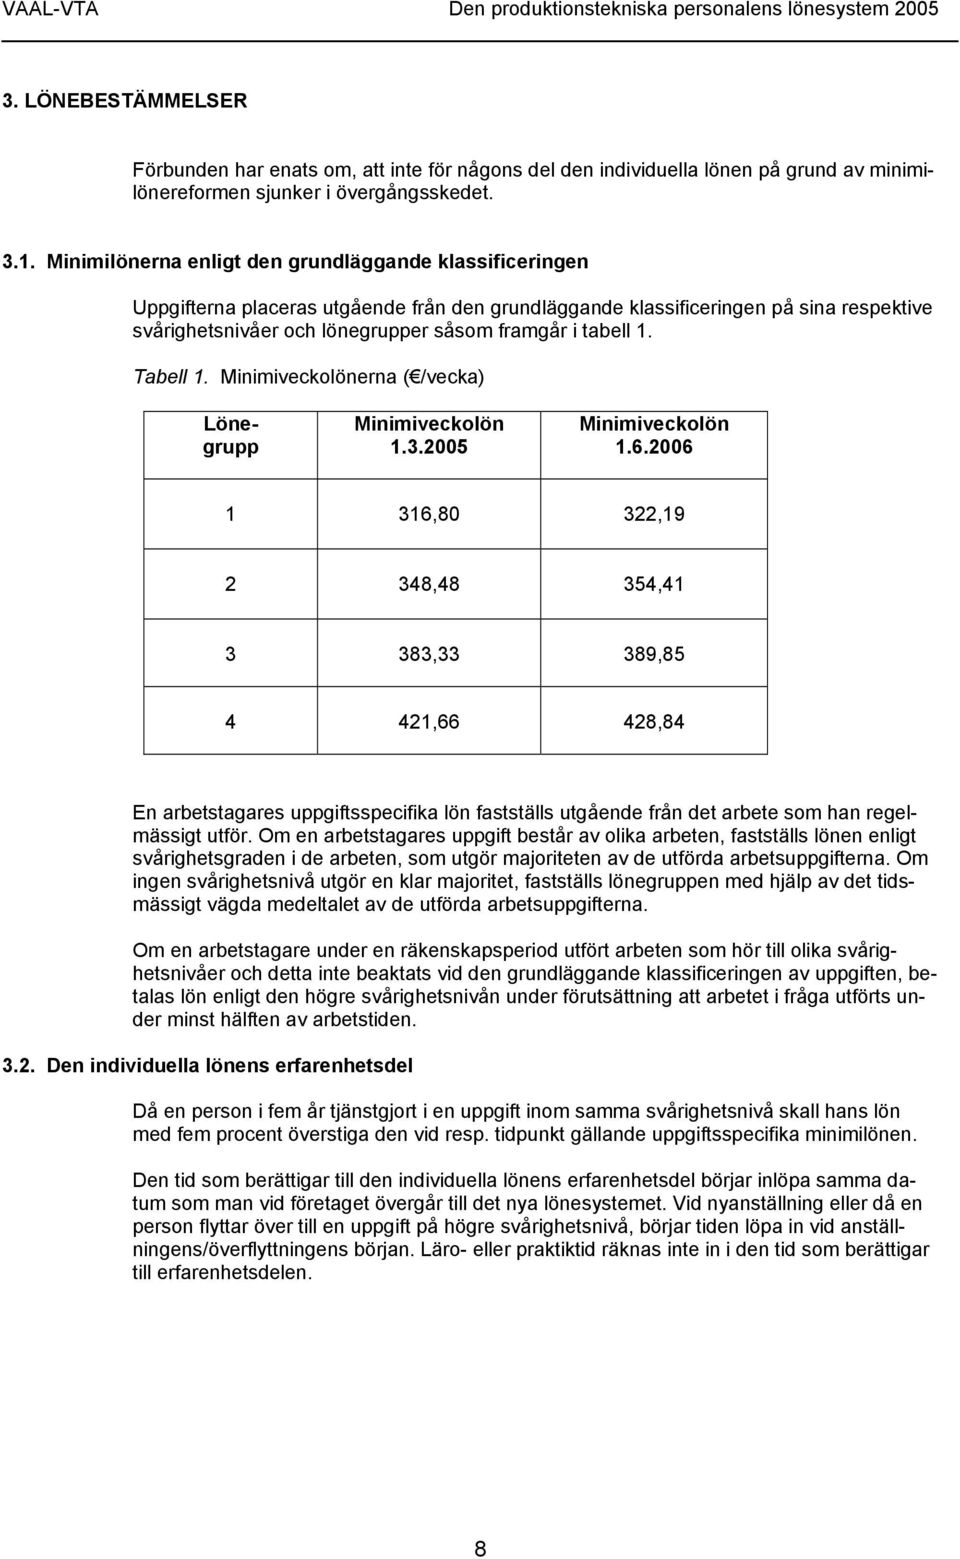 tabell 1. Tabell 1. Minimiveckolönerna ( /vecka) Lönegrupp Minimiveckolön 1.3.2005 Minimiveckolön 1.6.